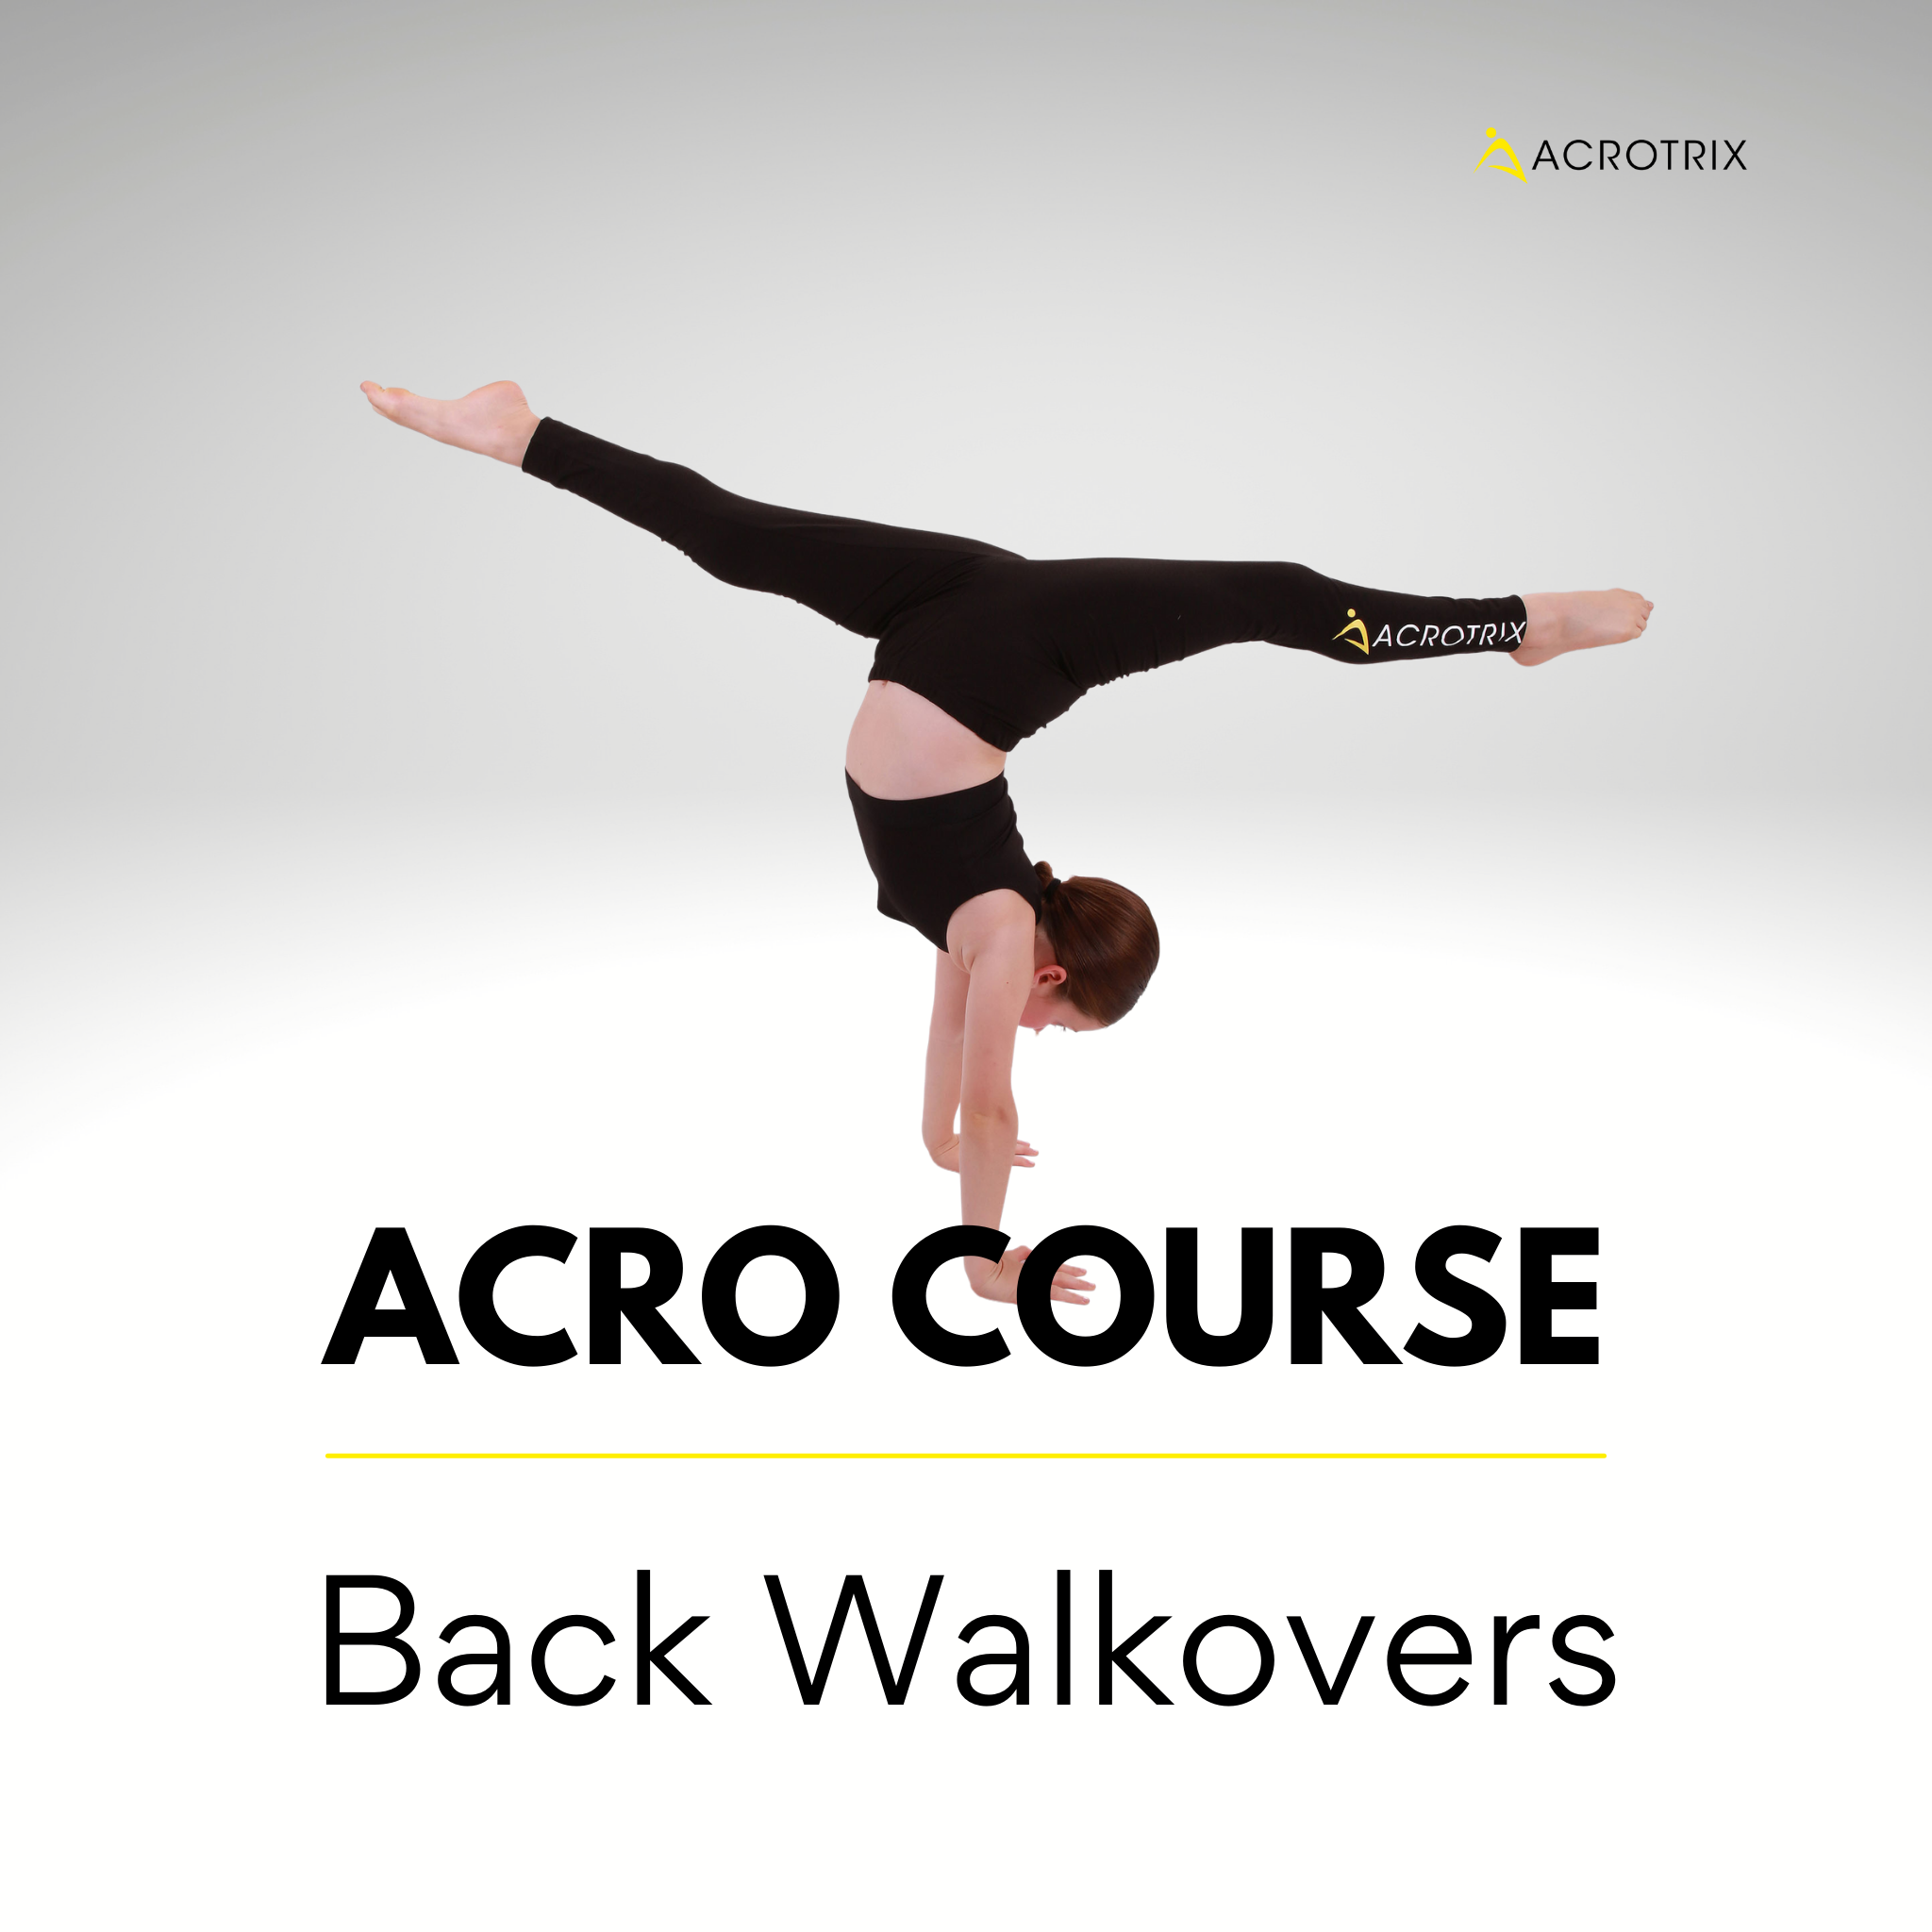 Back Walkover Course – ACROTRIX